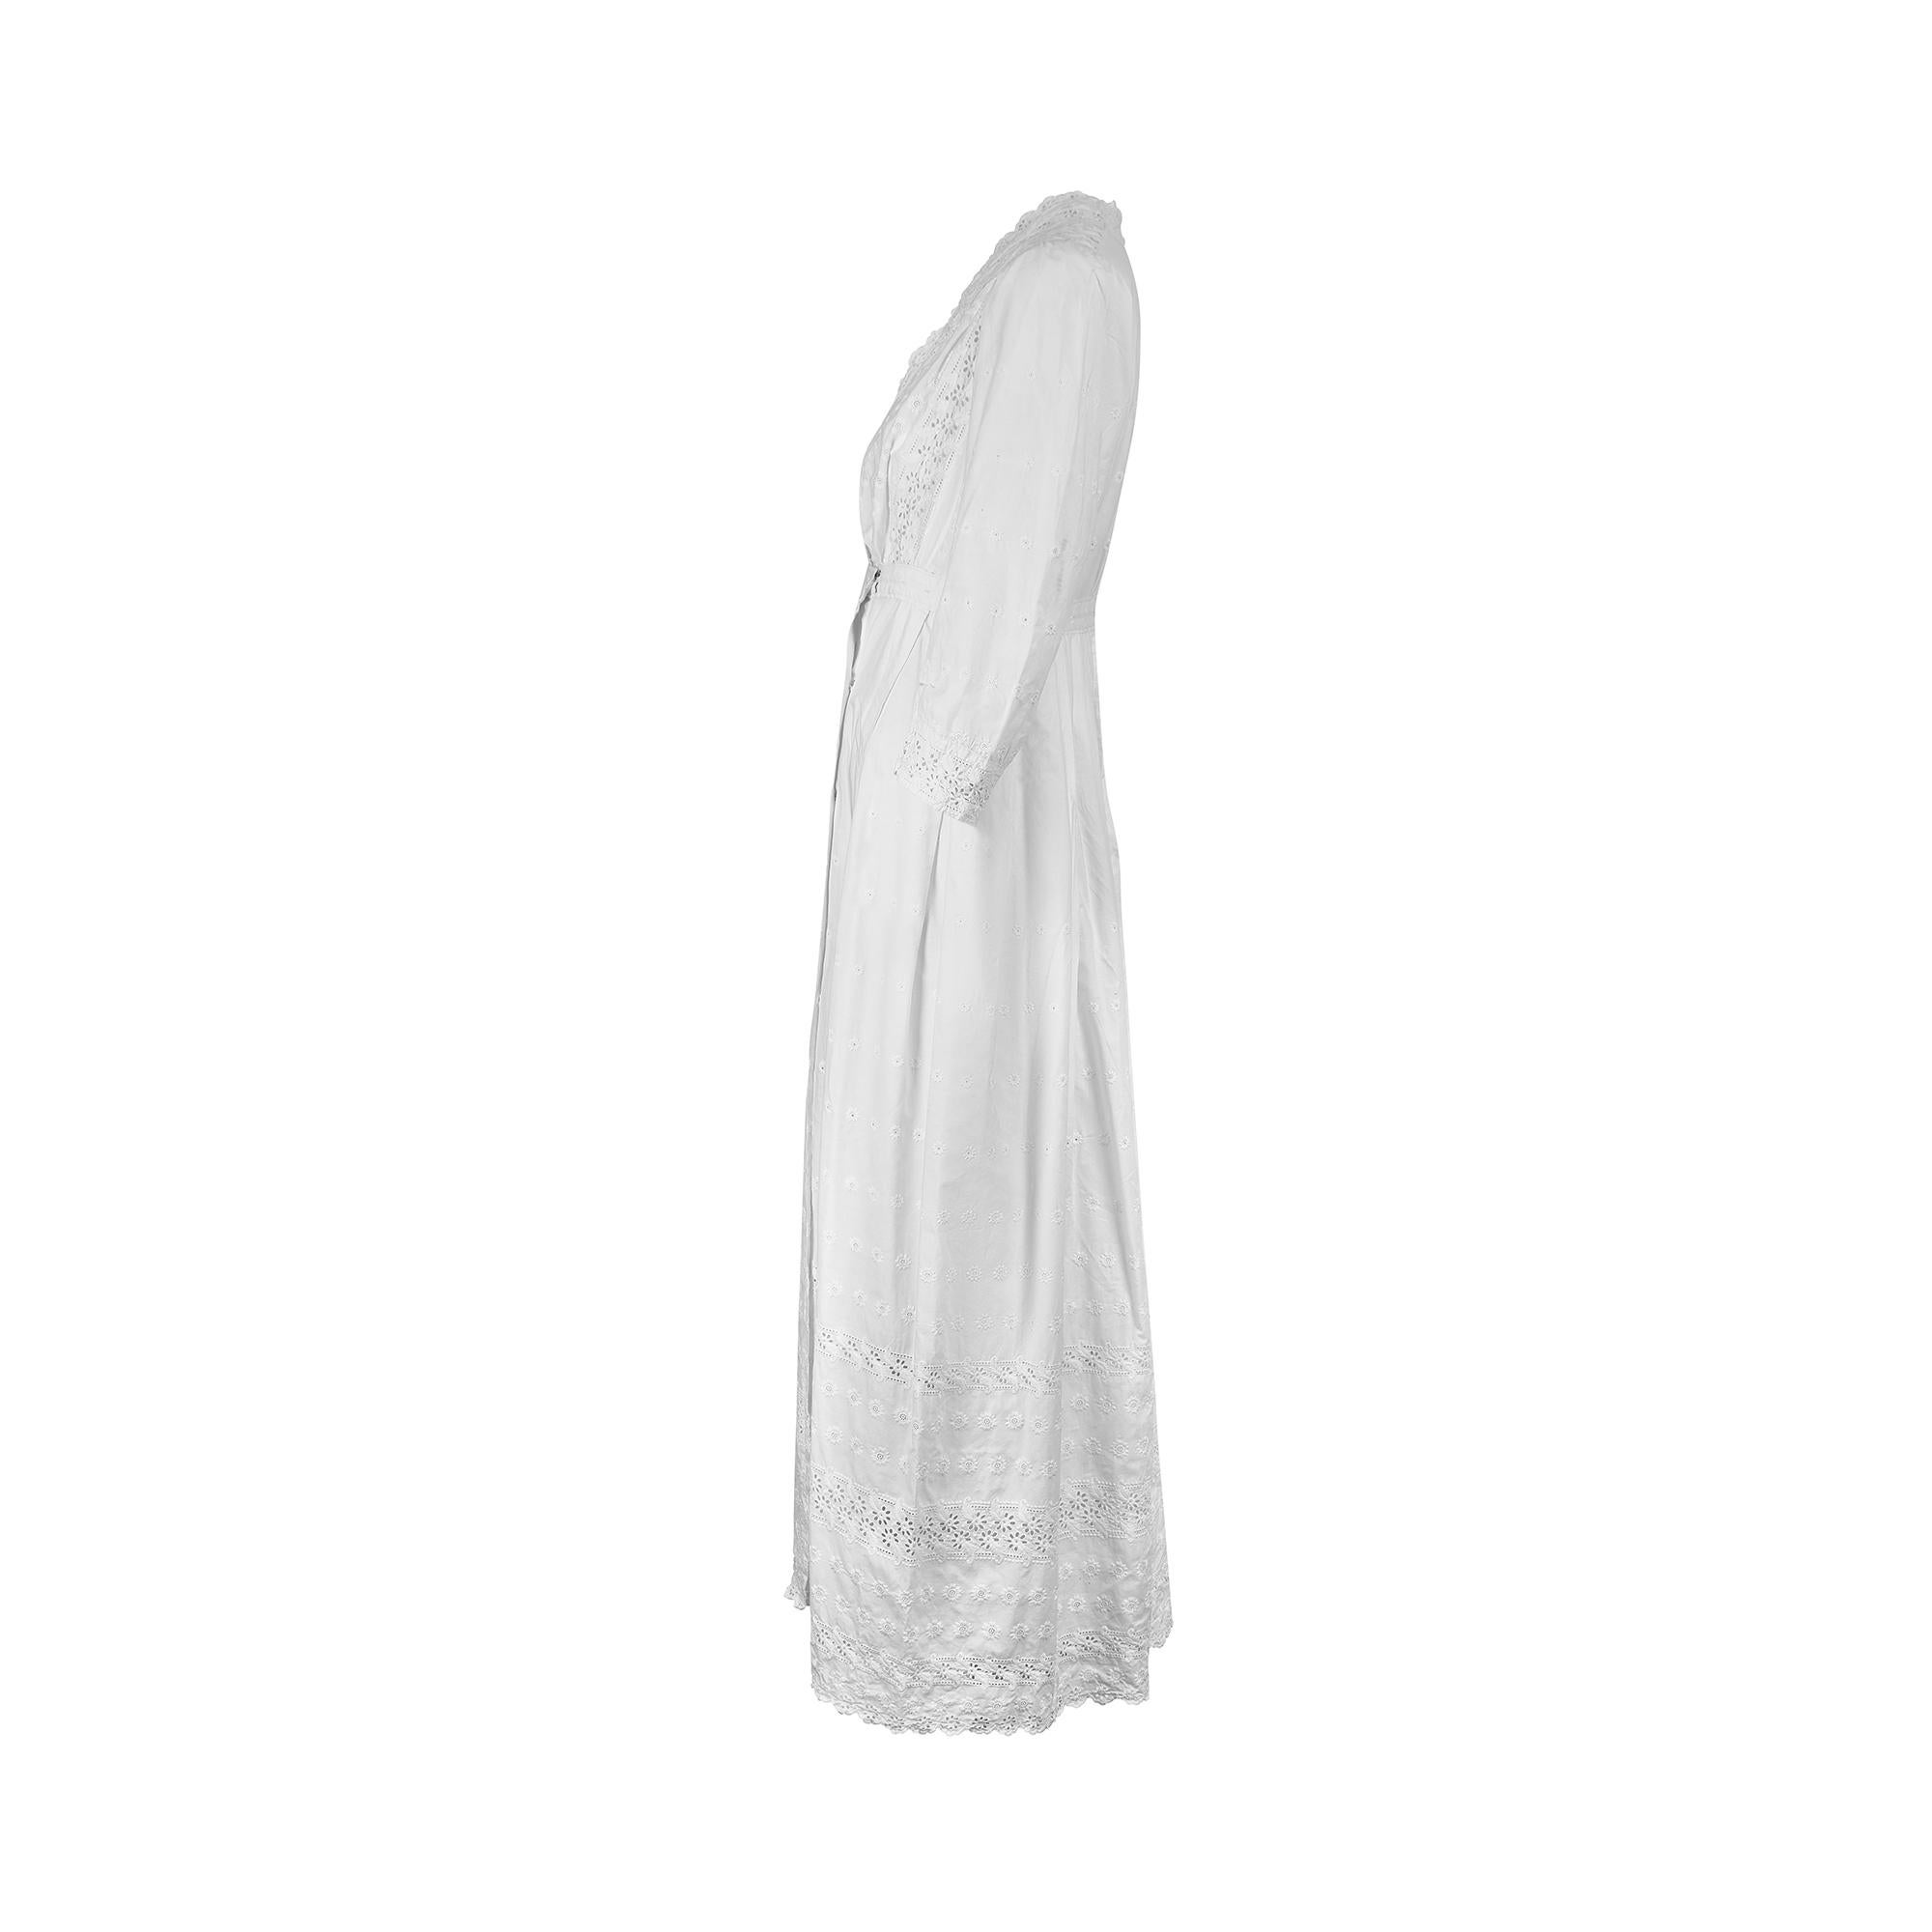 Cette robe ancienne a été créée dans les années 1910 et est en superbe état sans défaut. Le coton reste d'un blanc éclatant et ne porte aucune marque. Il est orné d'œillets découpés à la main et de broderies au point de satin ton sur ton sur